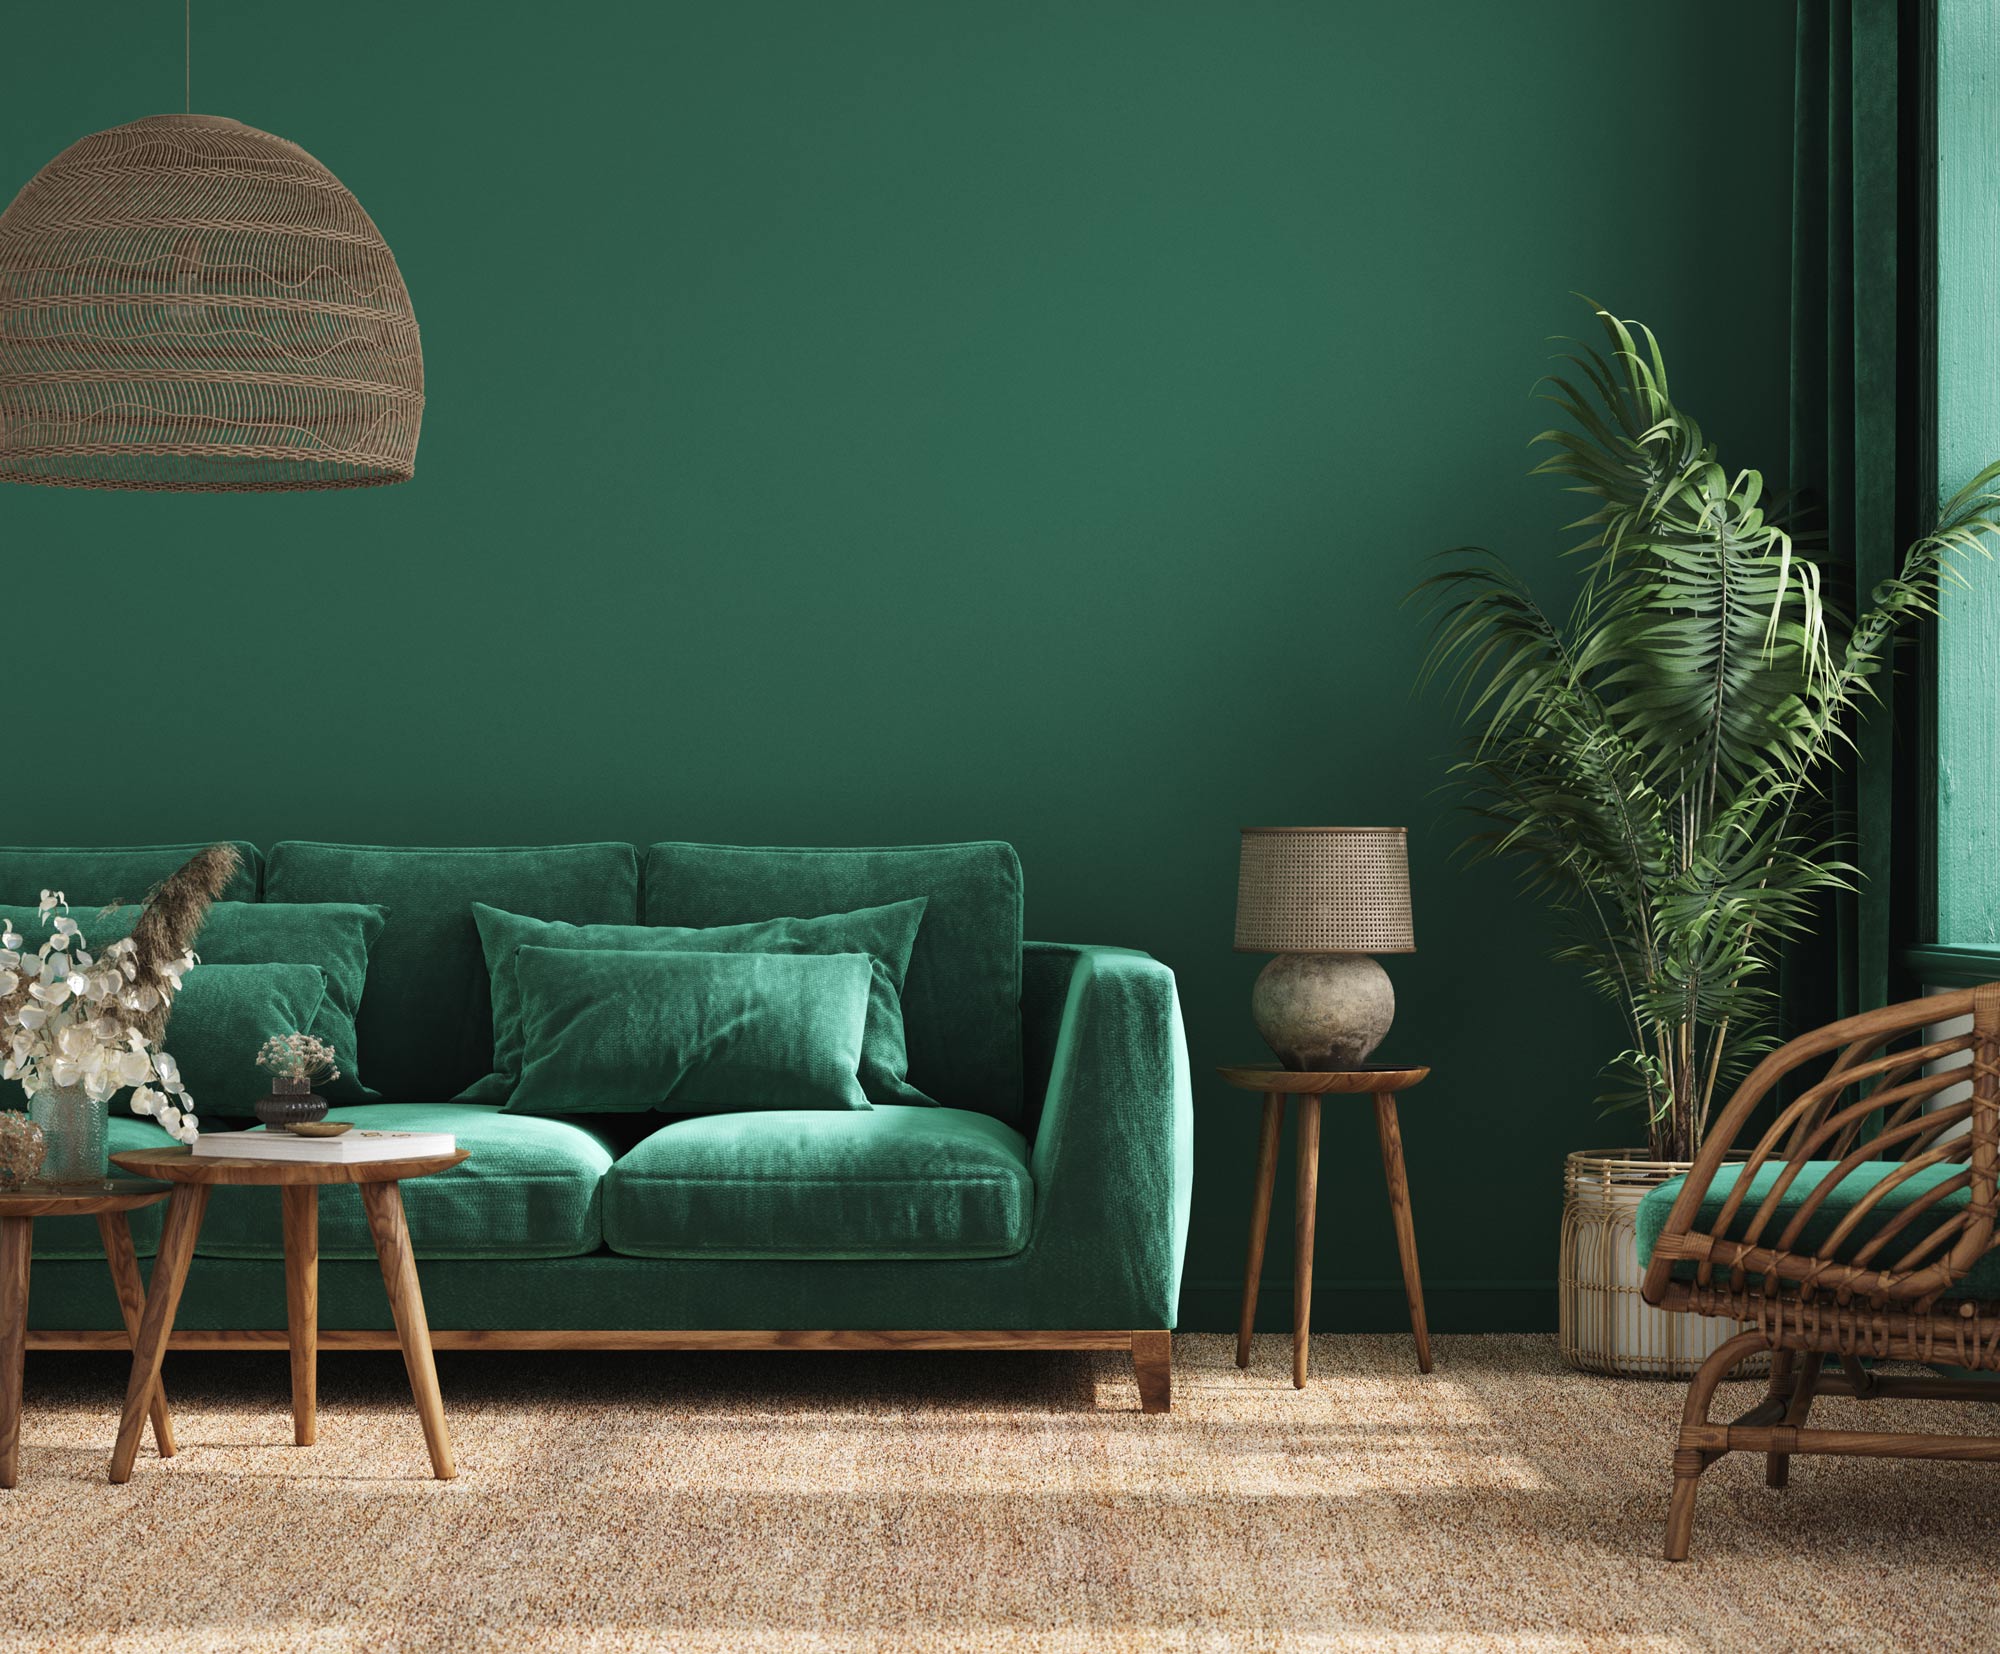 Grönt inrett vardagsrum med grönmålade väggar